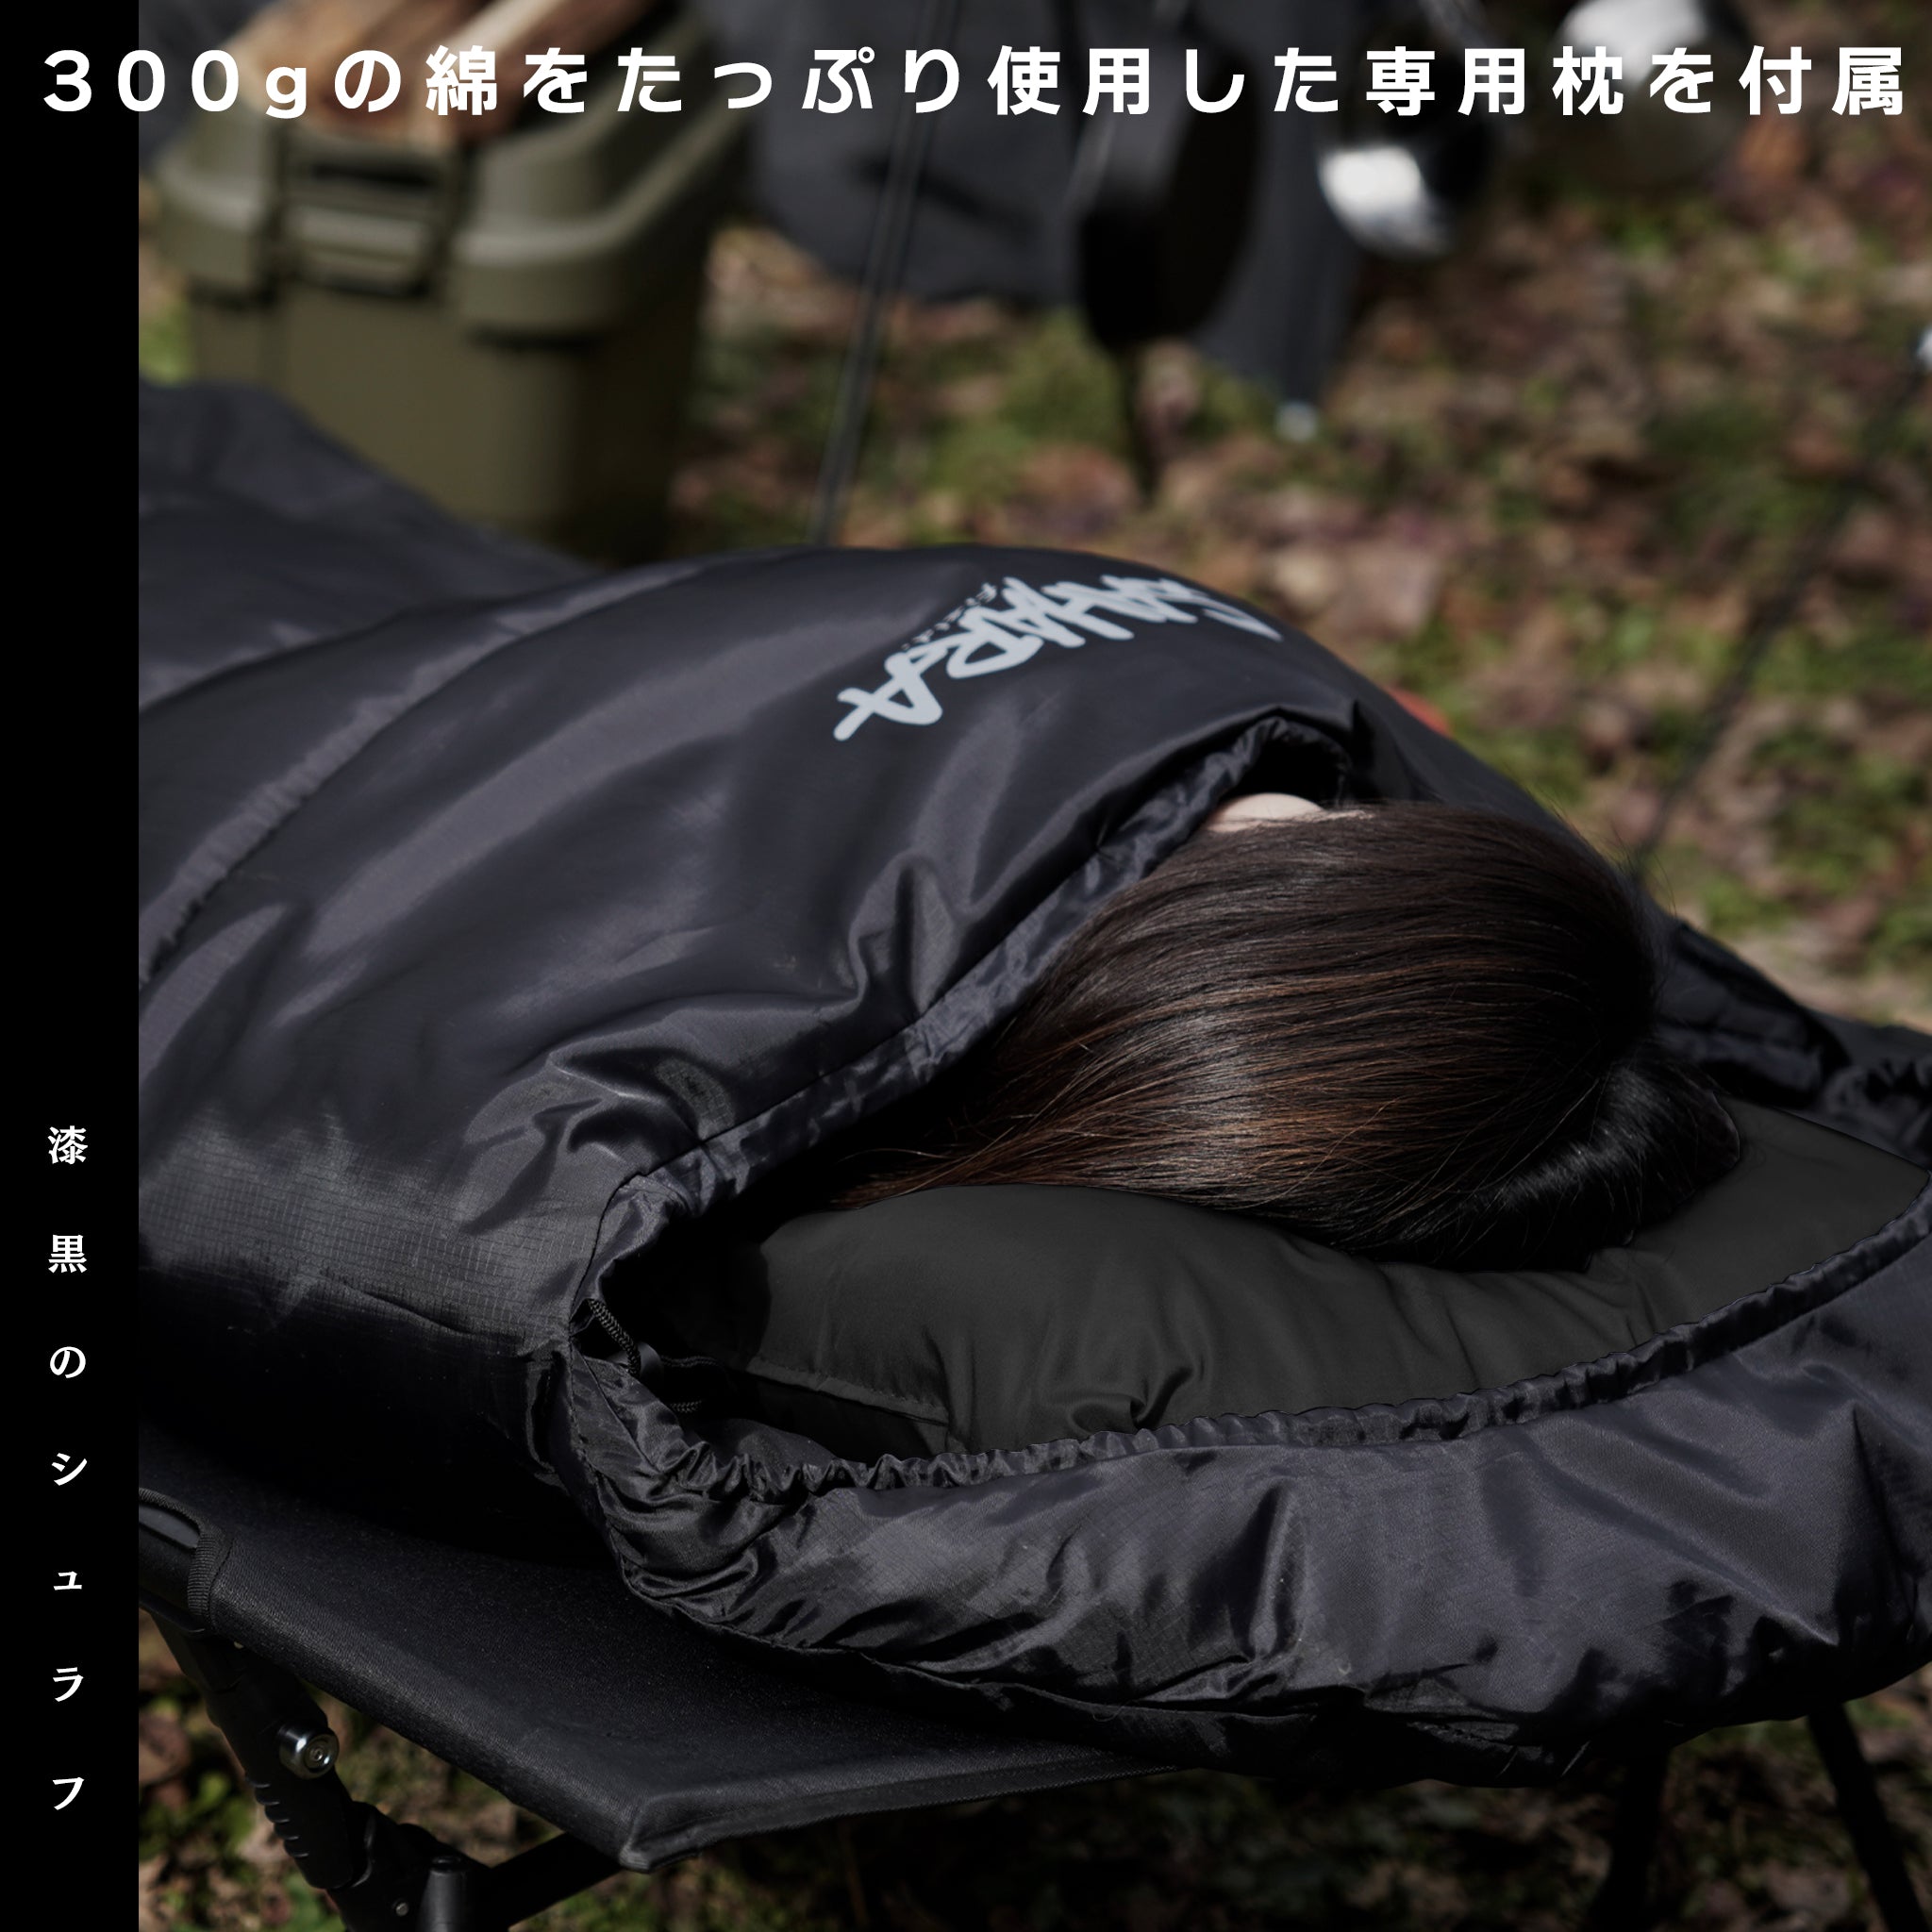 FieldSAHARA Z700 封筒型 枕付き 4色 限界使用可能温度 -7℃ ダウン